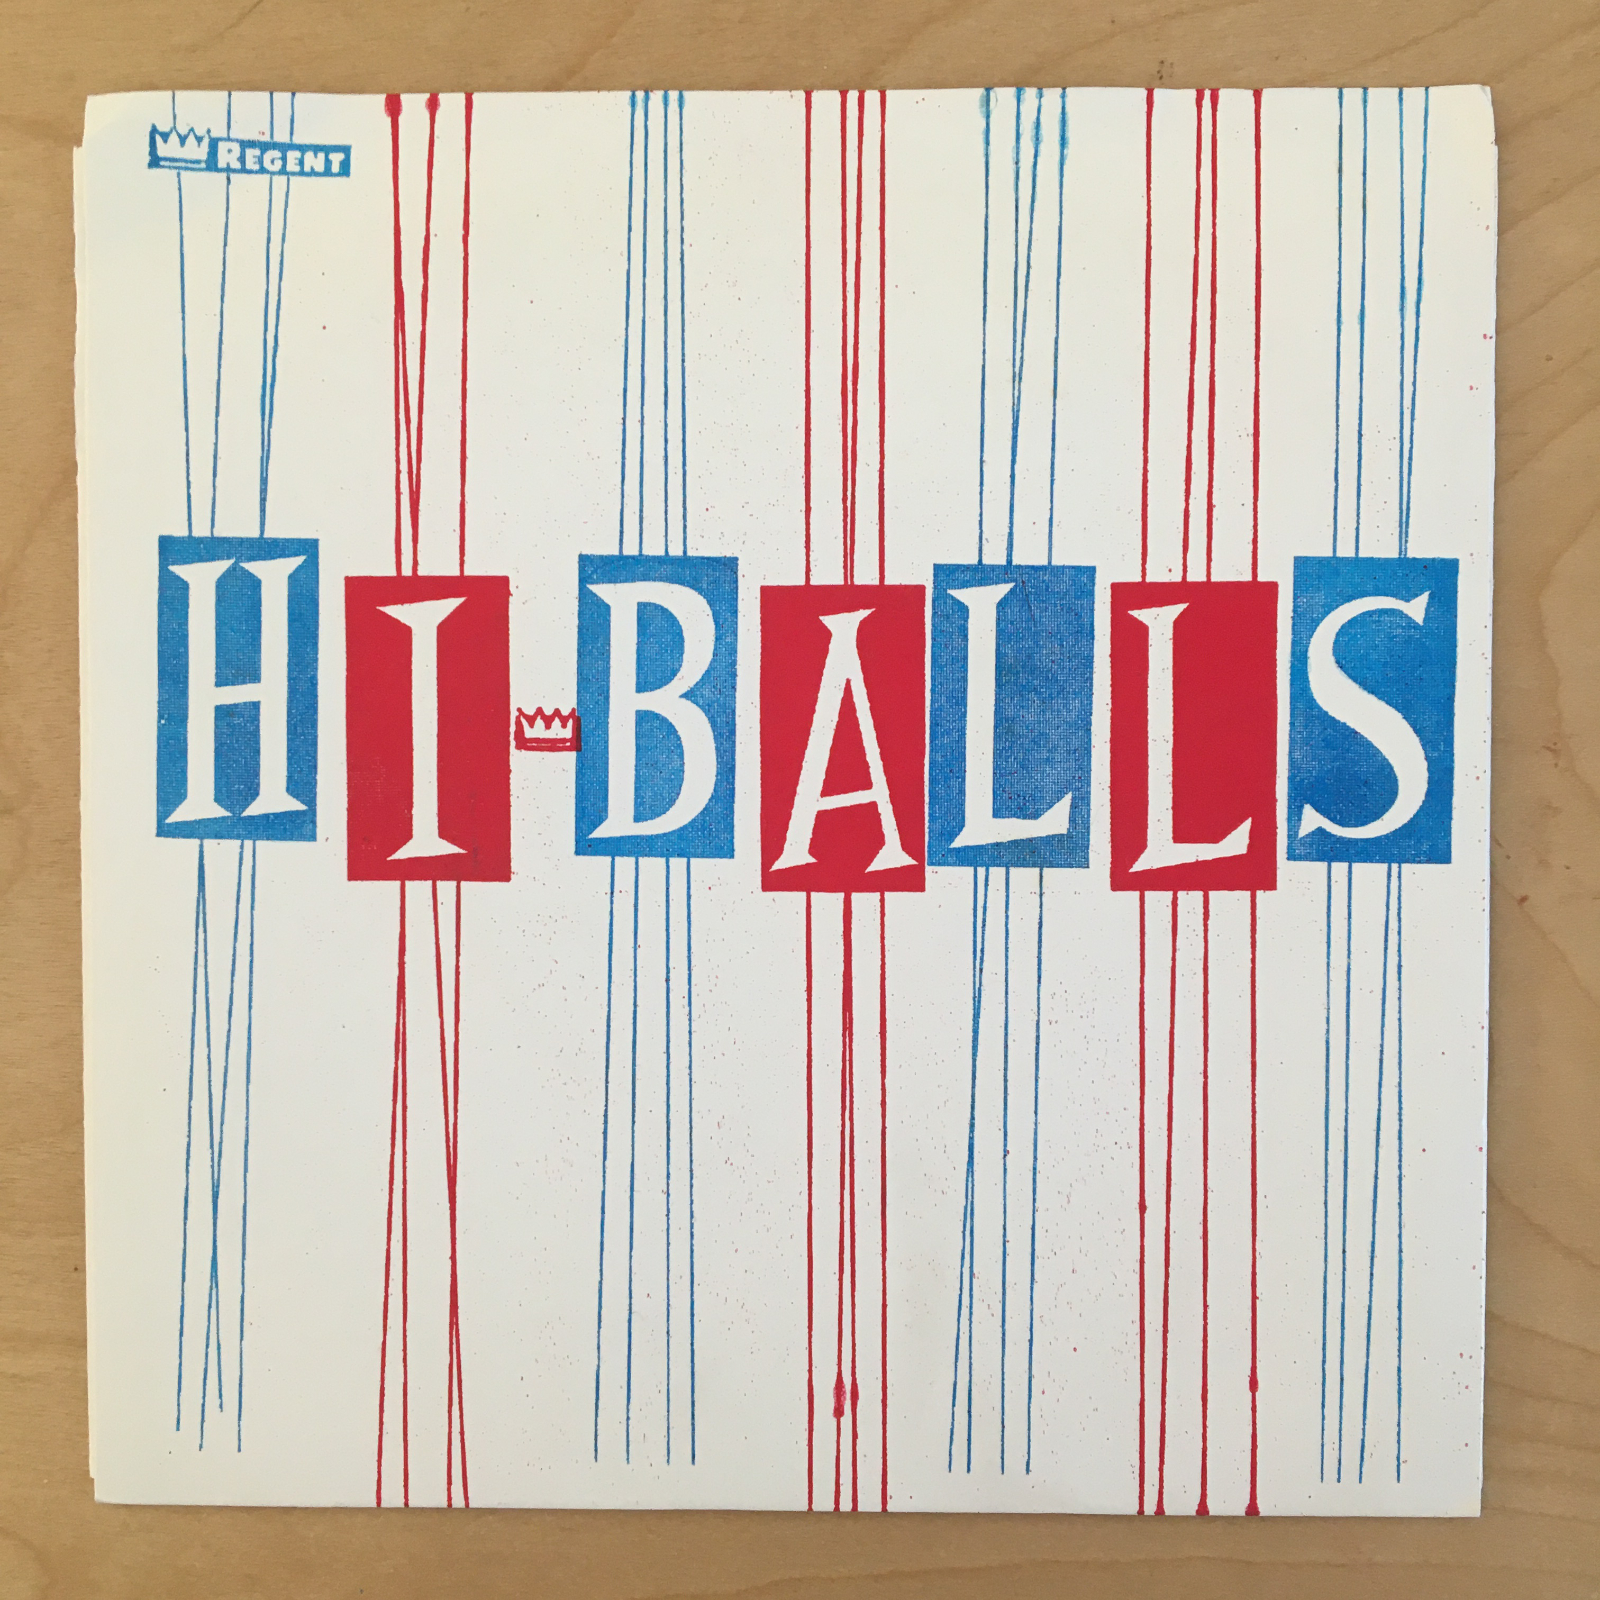  front cover of Hi-Balls record